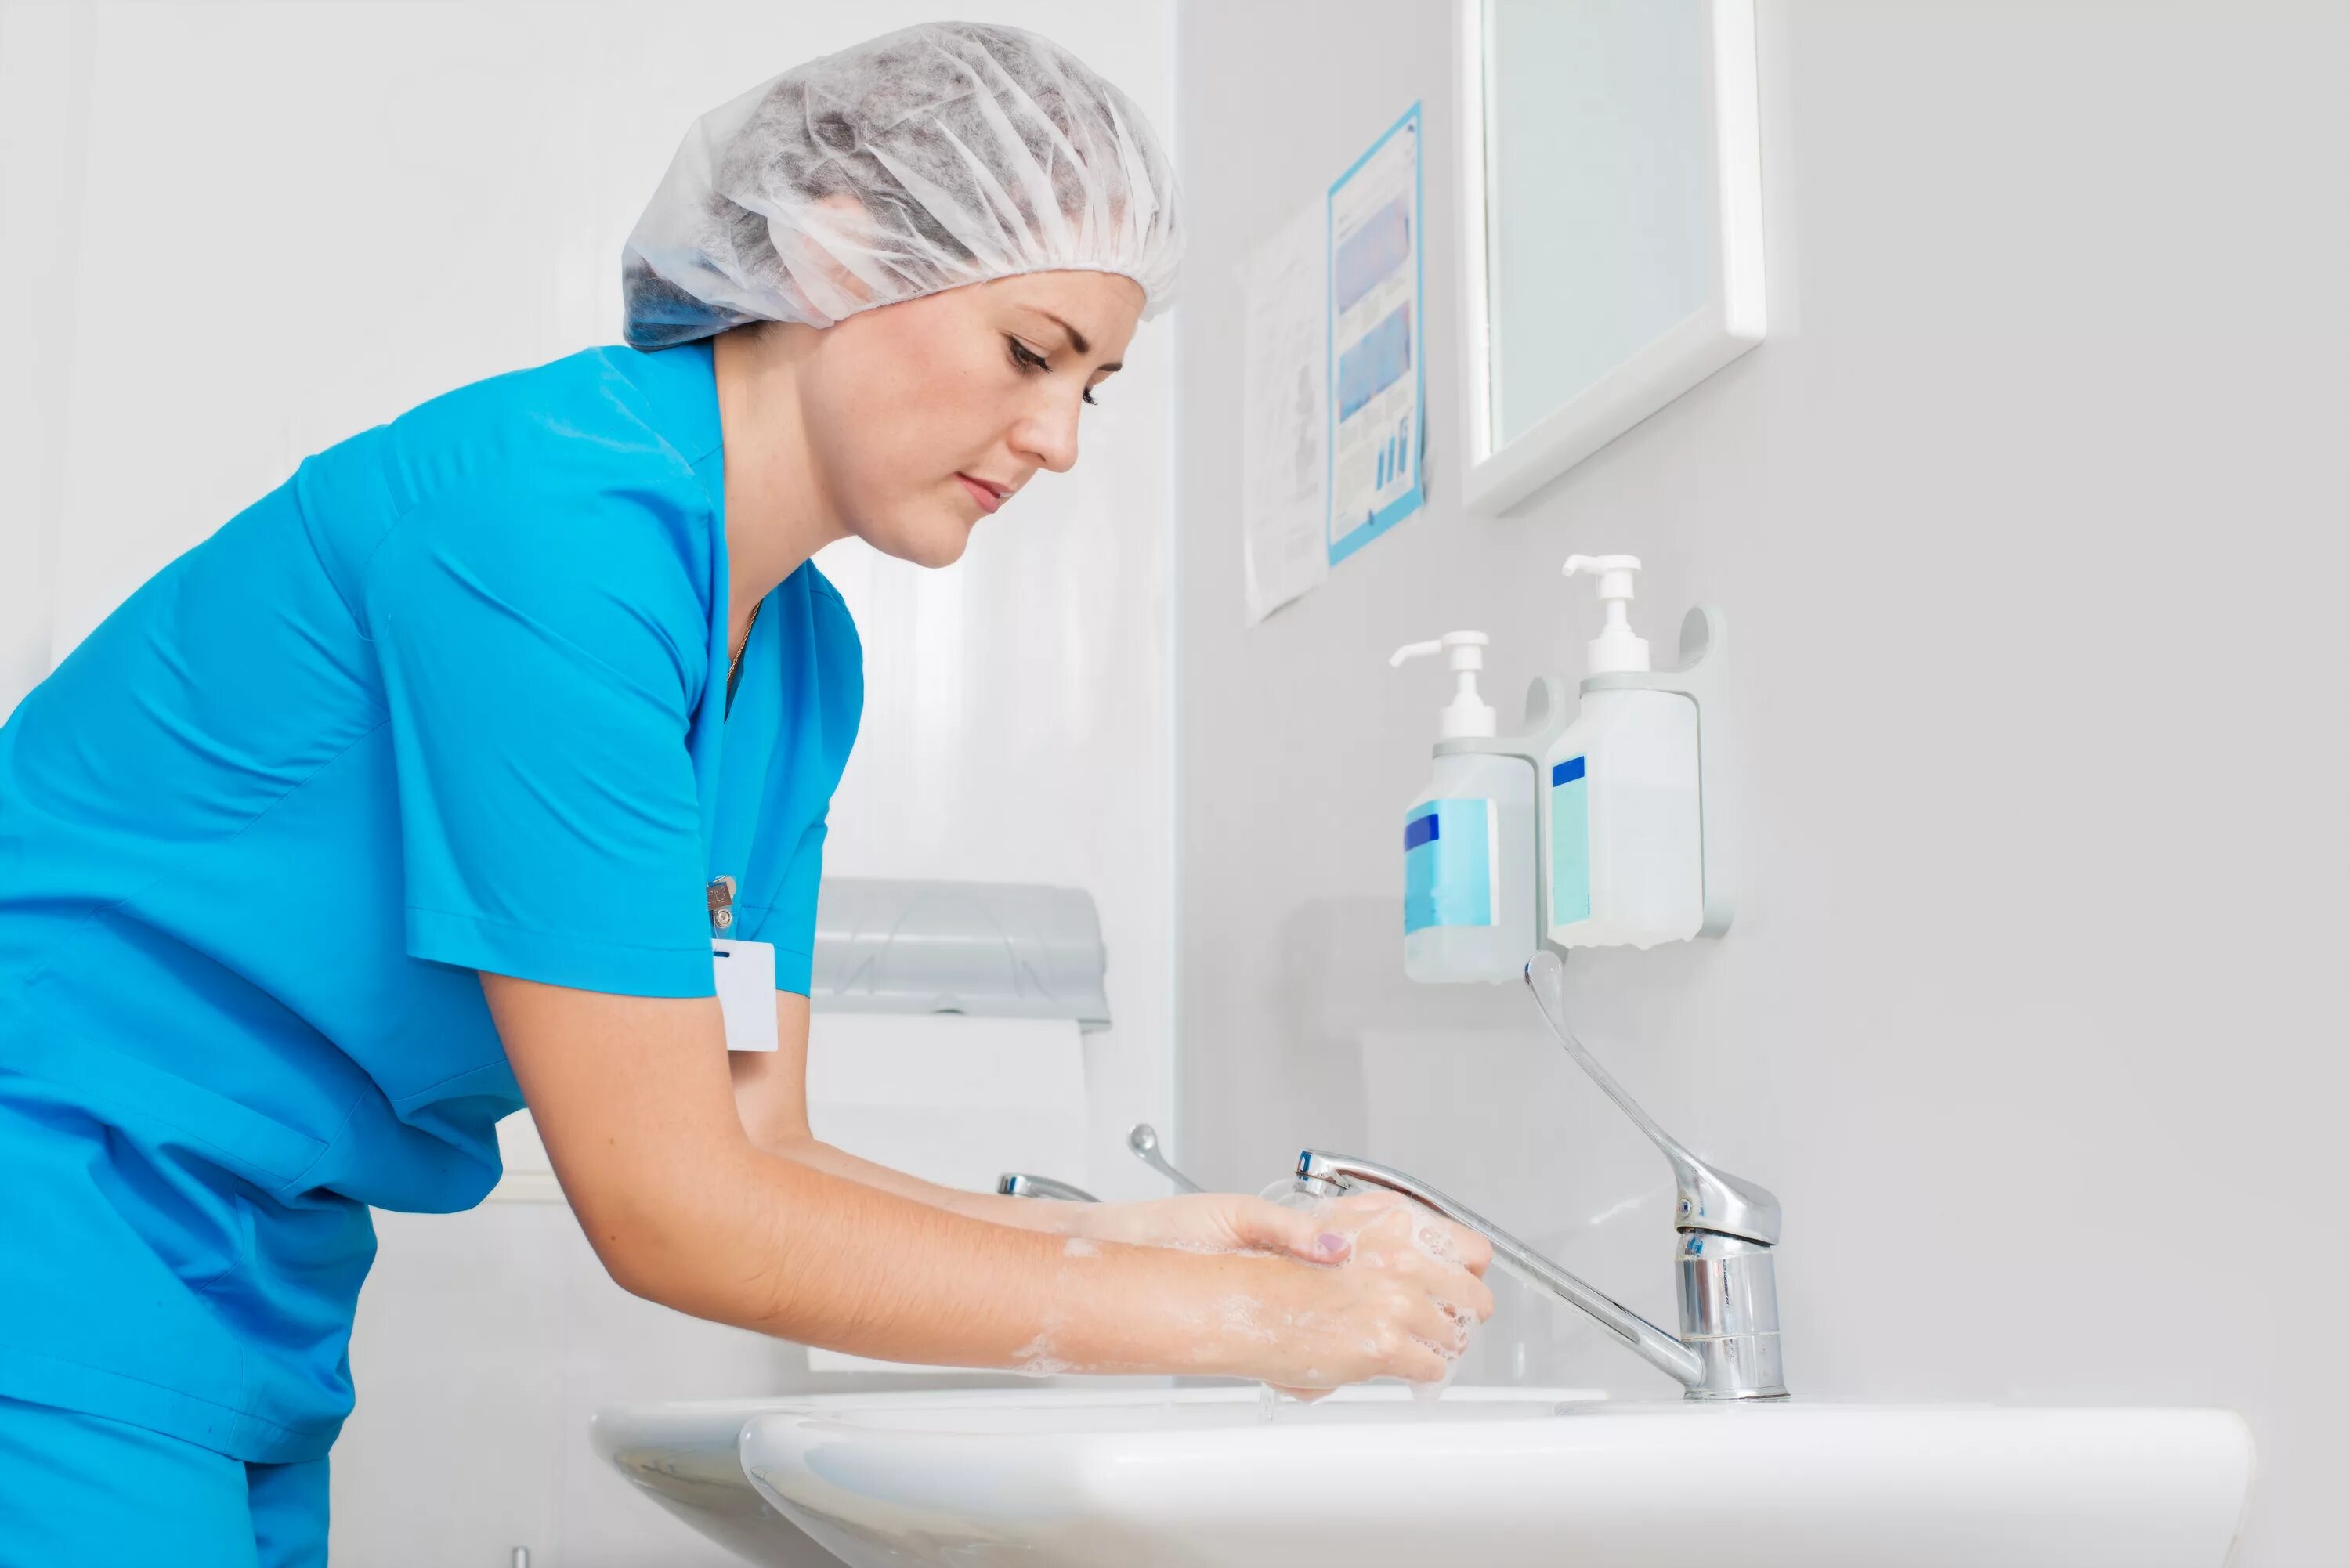 Мытье рук медсестры. Мытье рук медицинского персоо. Гигиена медицинского персонала. Соблюдение правил асептики и антисептики.